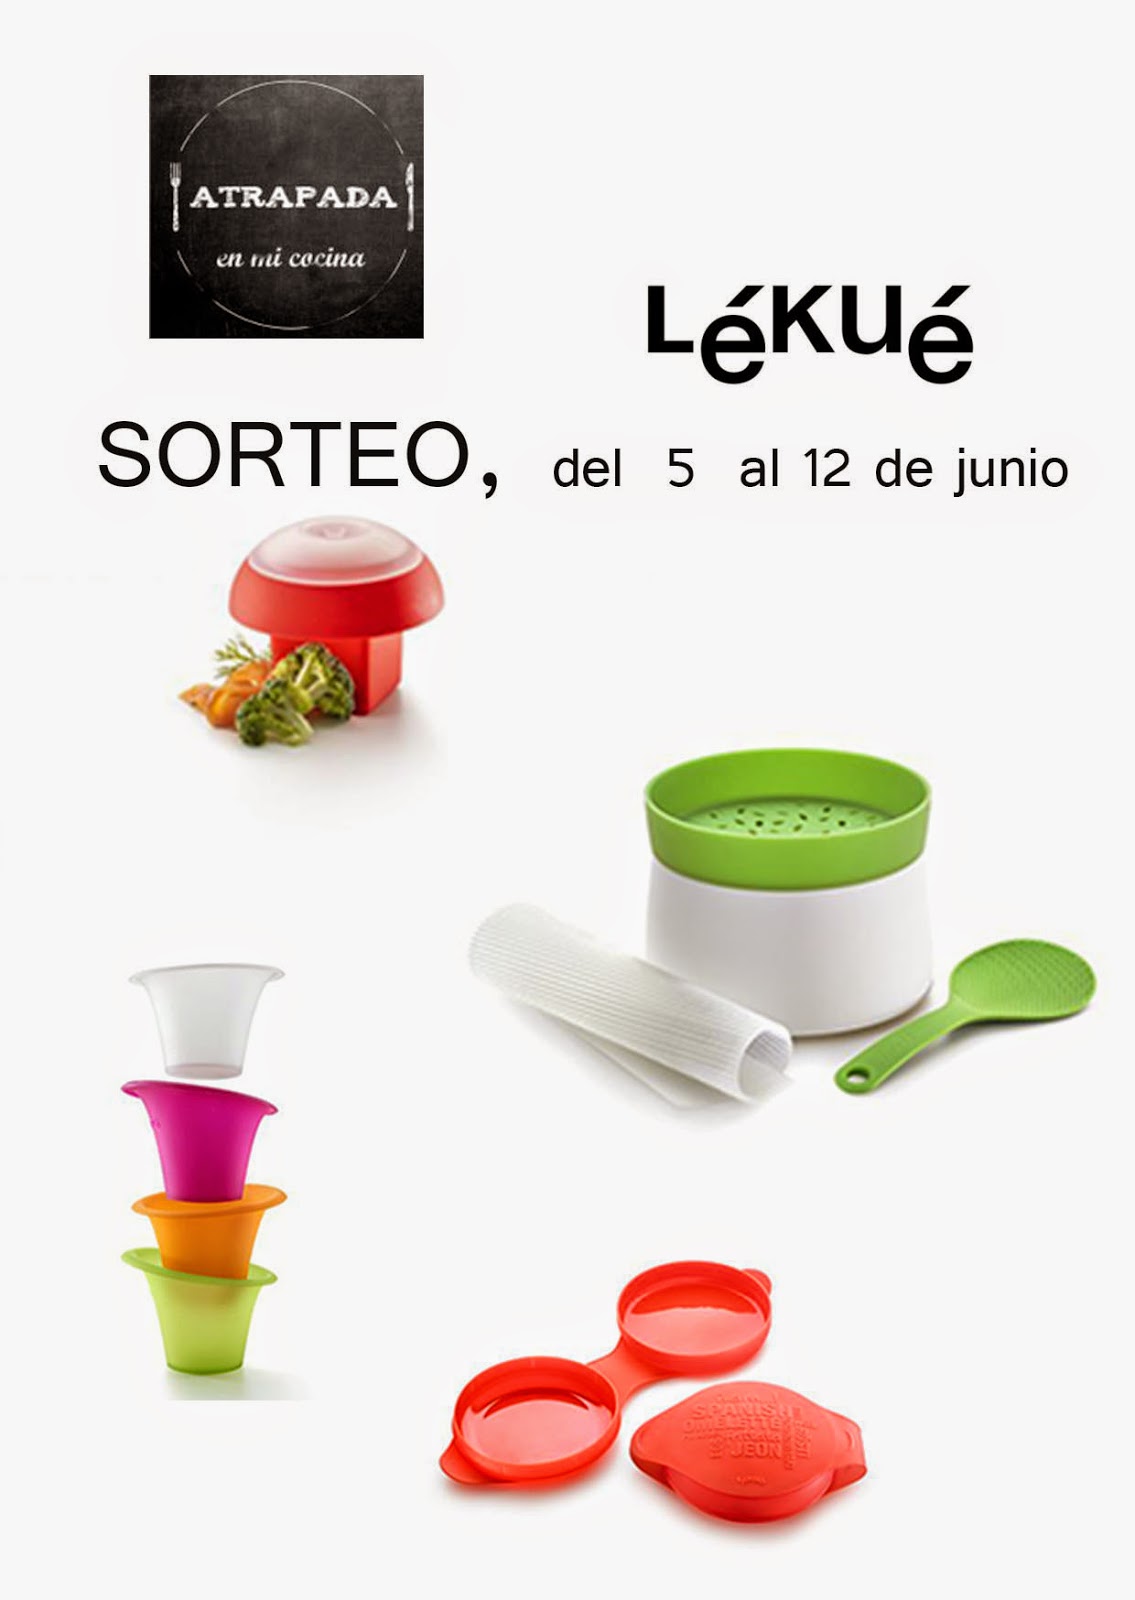 Los 6 productos estrella de Lékué para cocinar con sabor